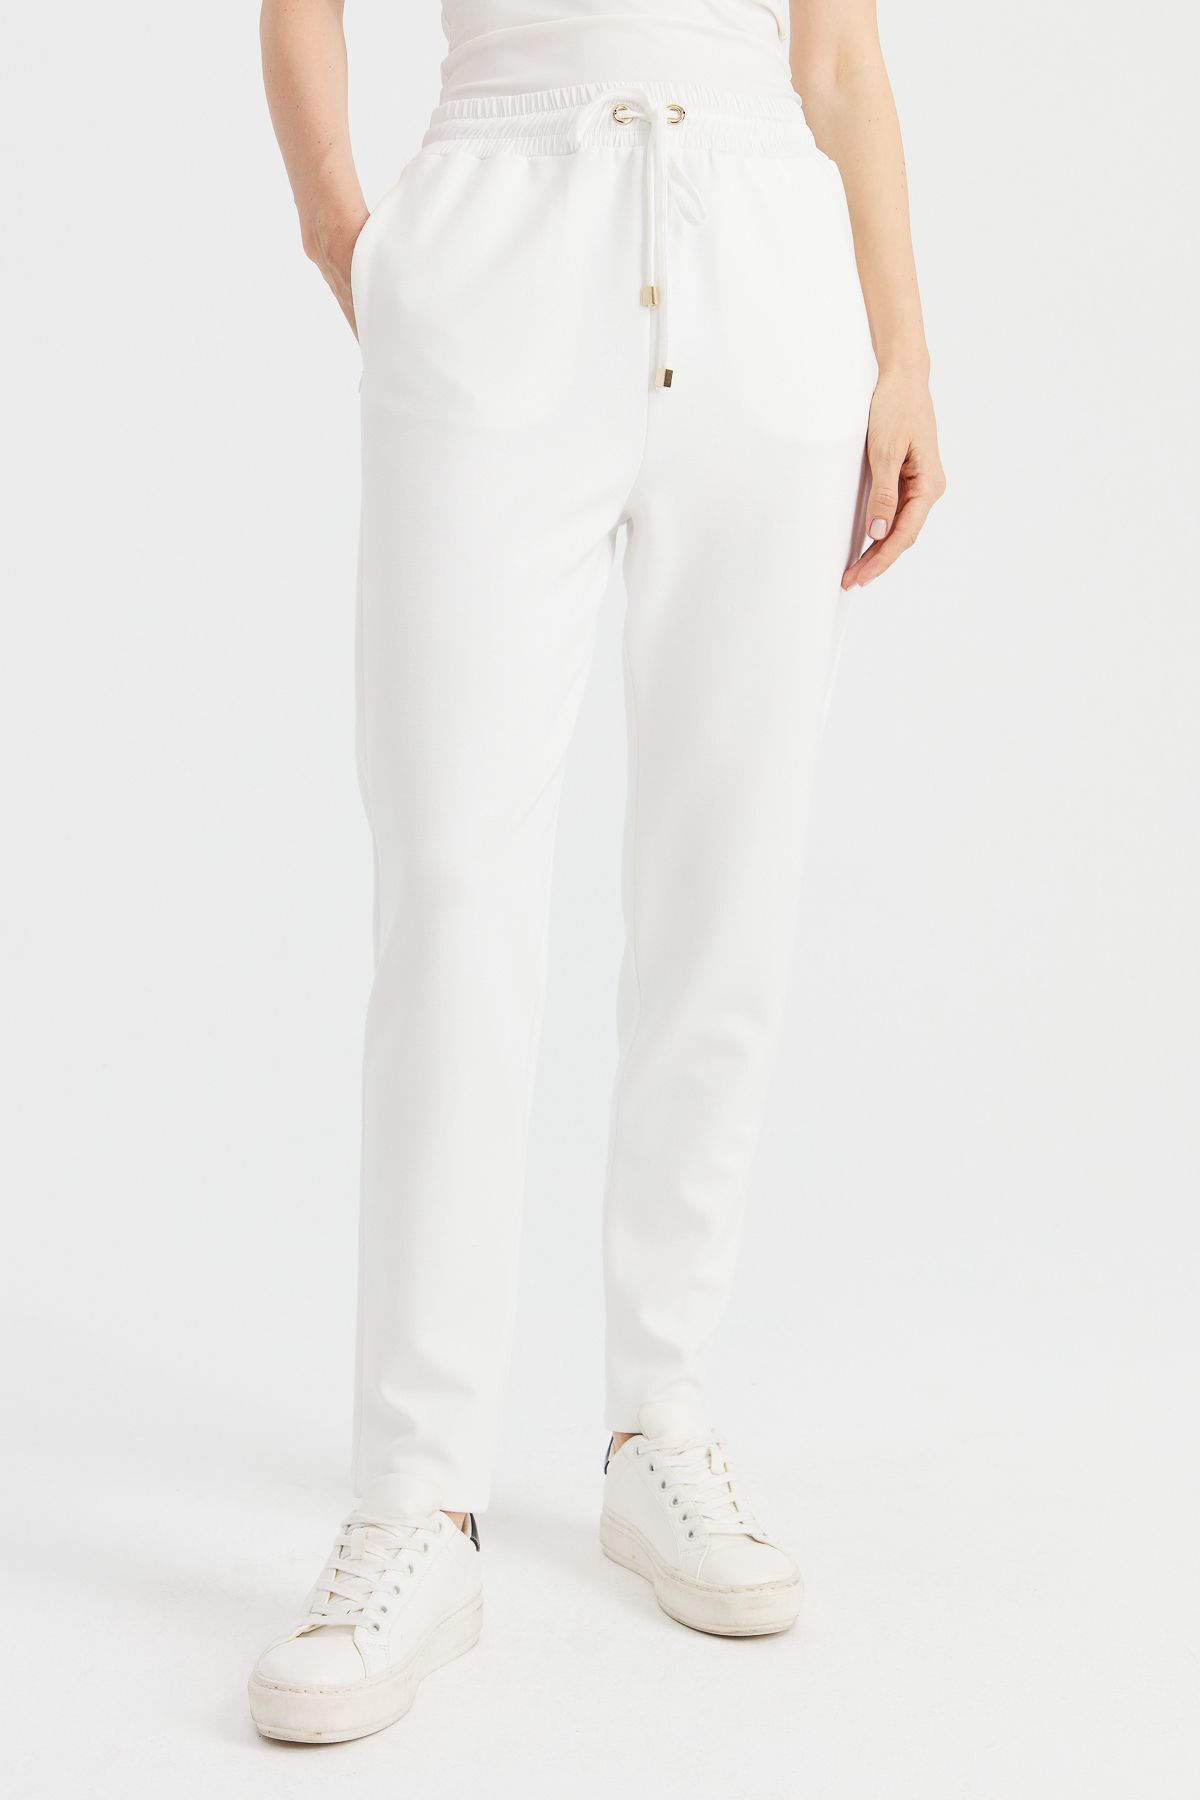 Desen Triko Kadın Cepli Eşofman Pantolon Beyaz